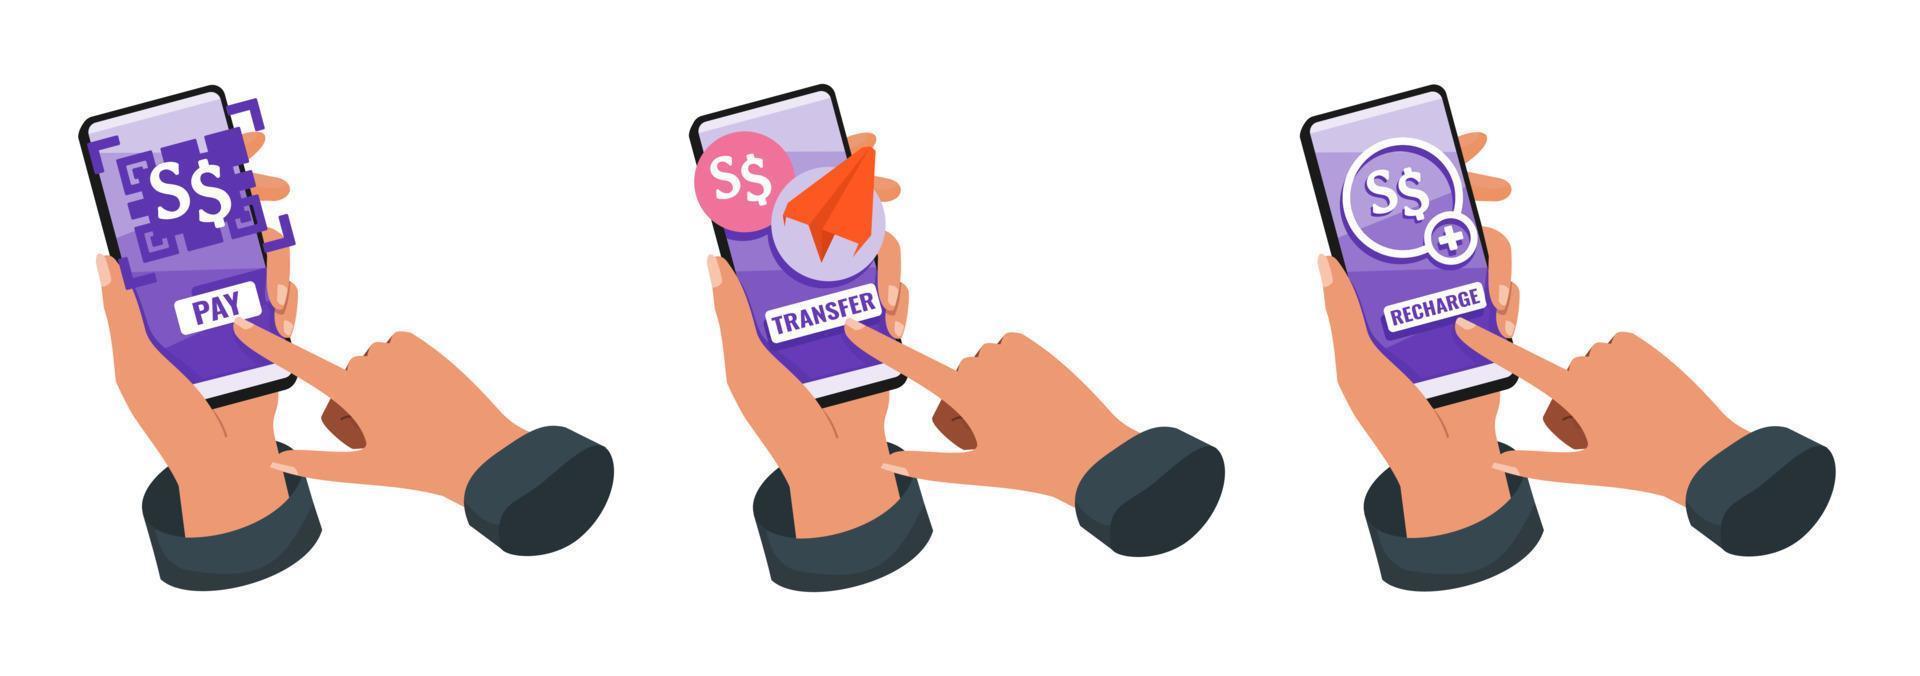 mobiel bank met Singapore dollar illustratie vector